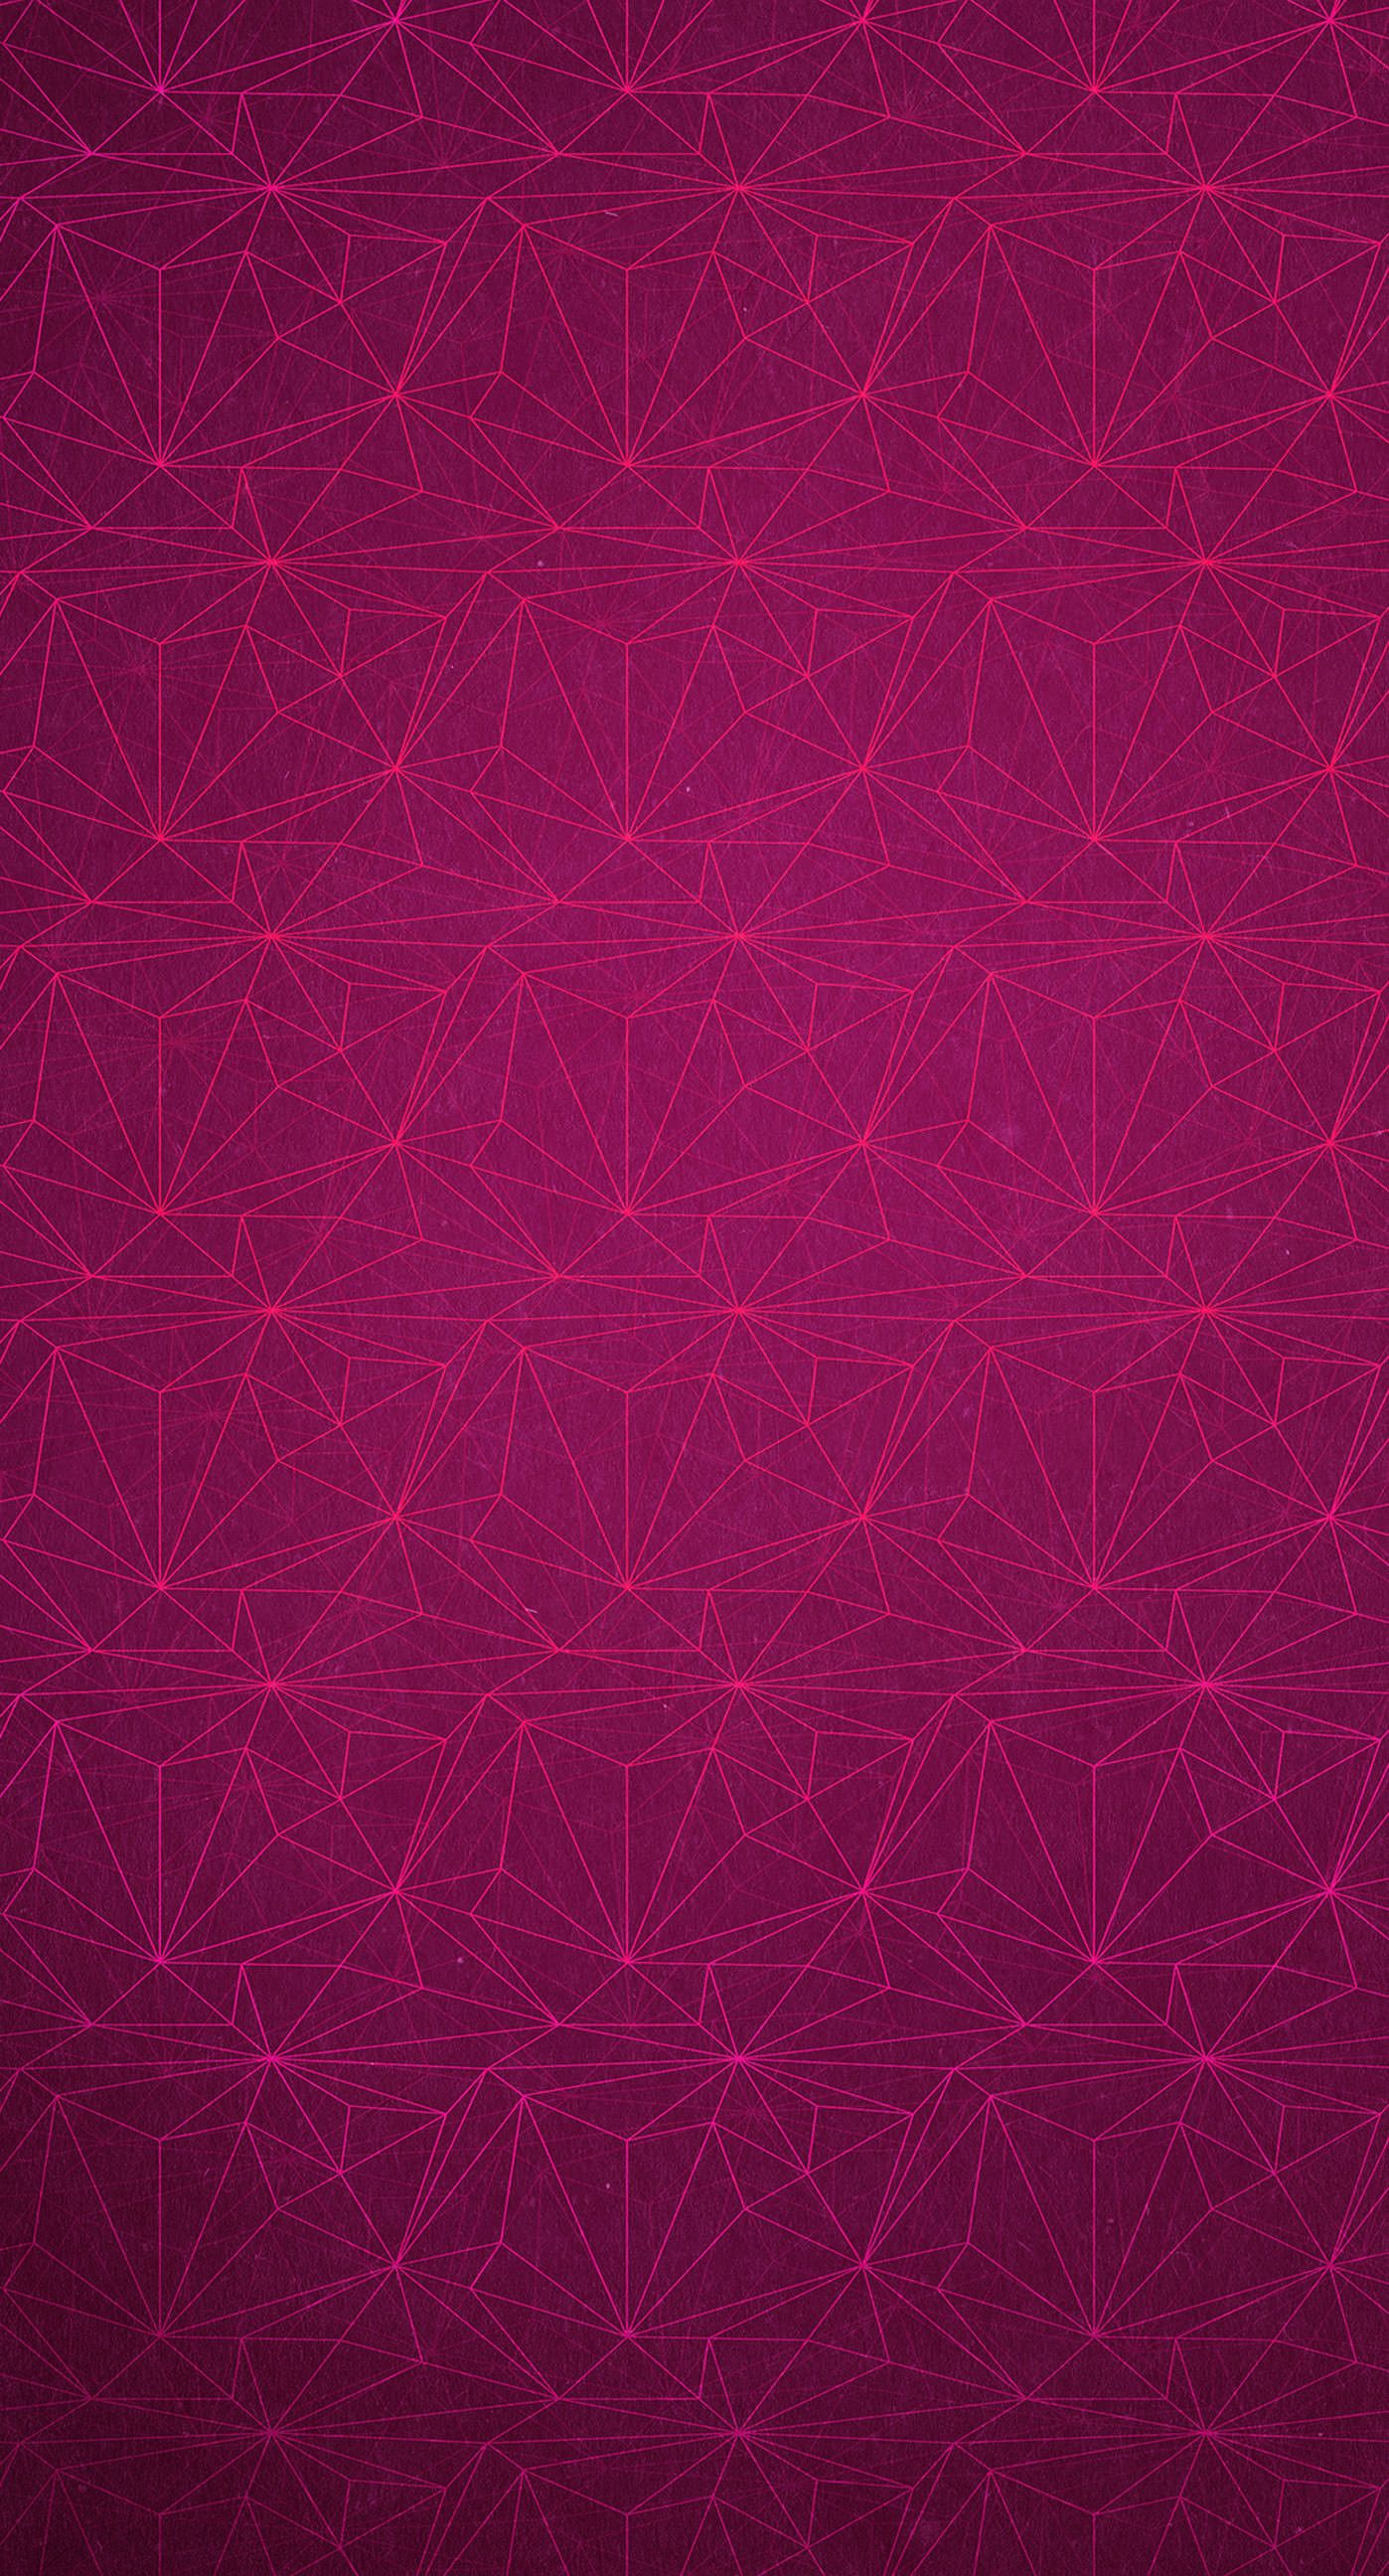 Dark Pink Iphone Wallpapers